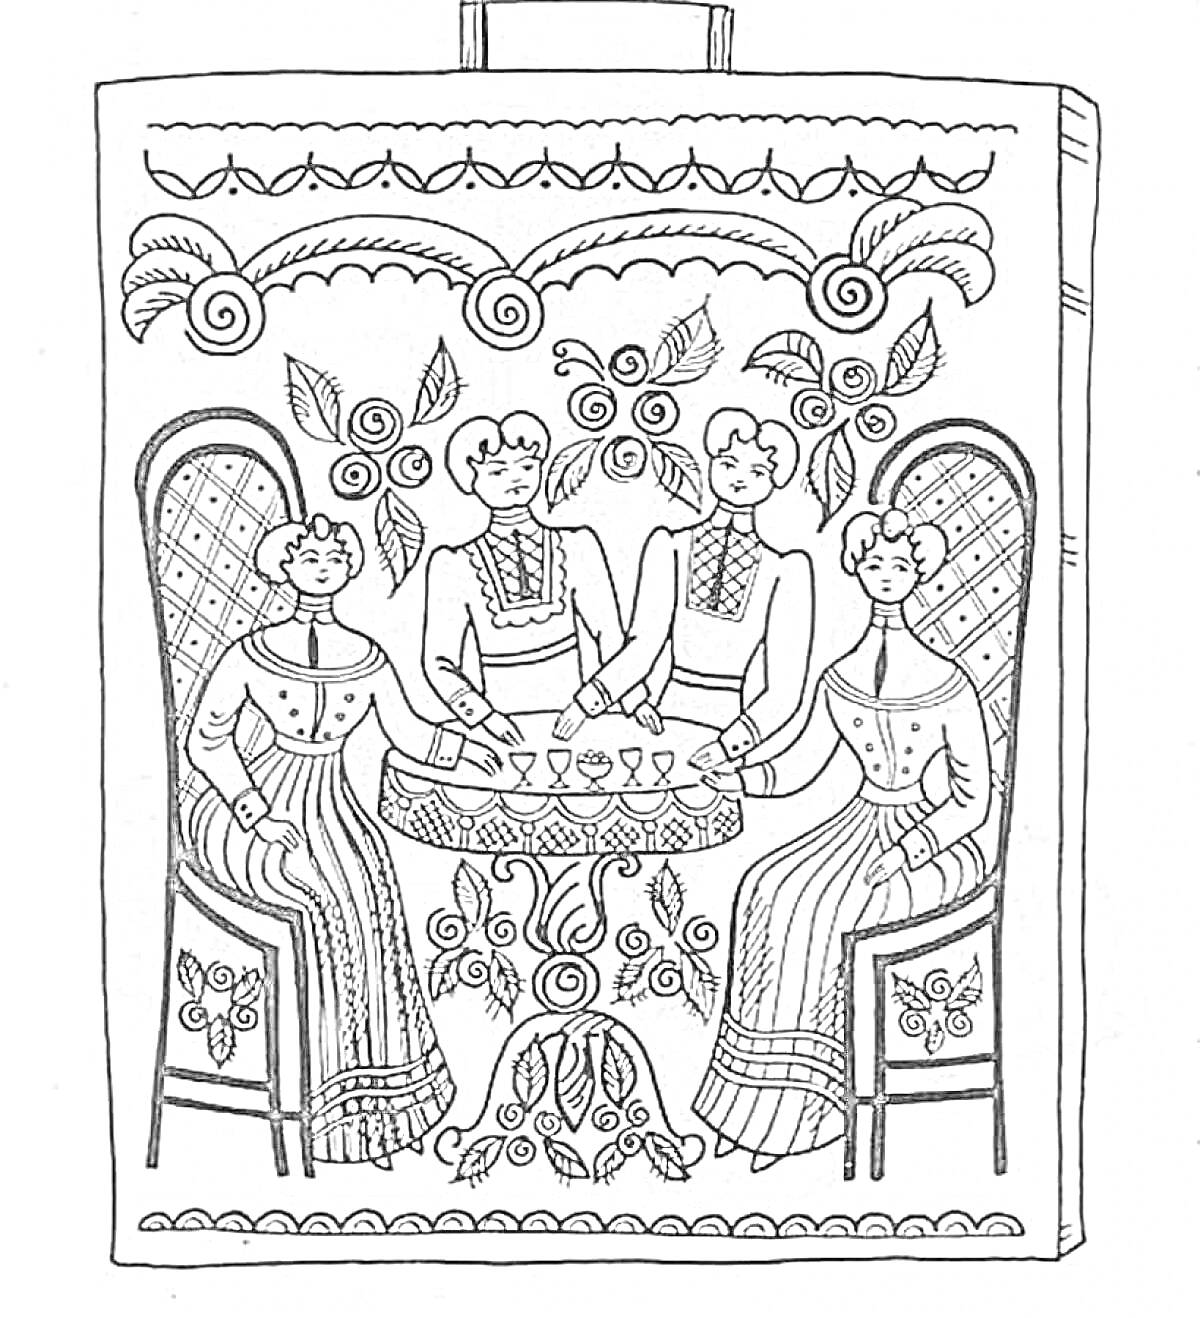 Четыре женщины за столом, украшенные цветы и листья, спинка стула с узором